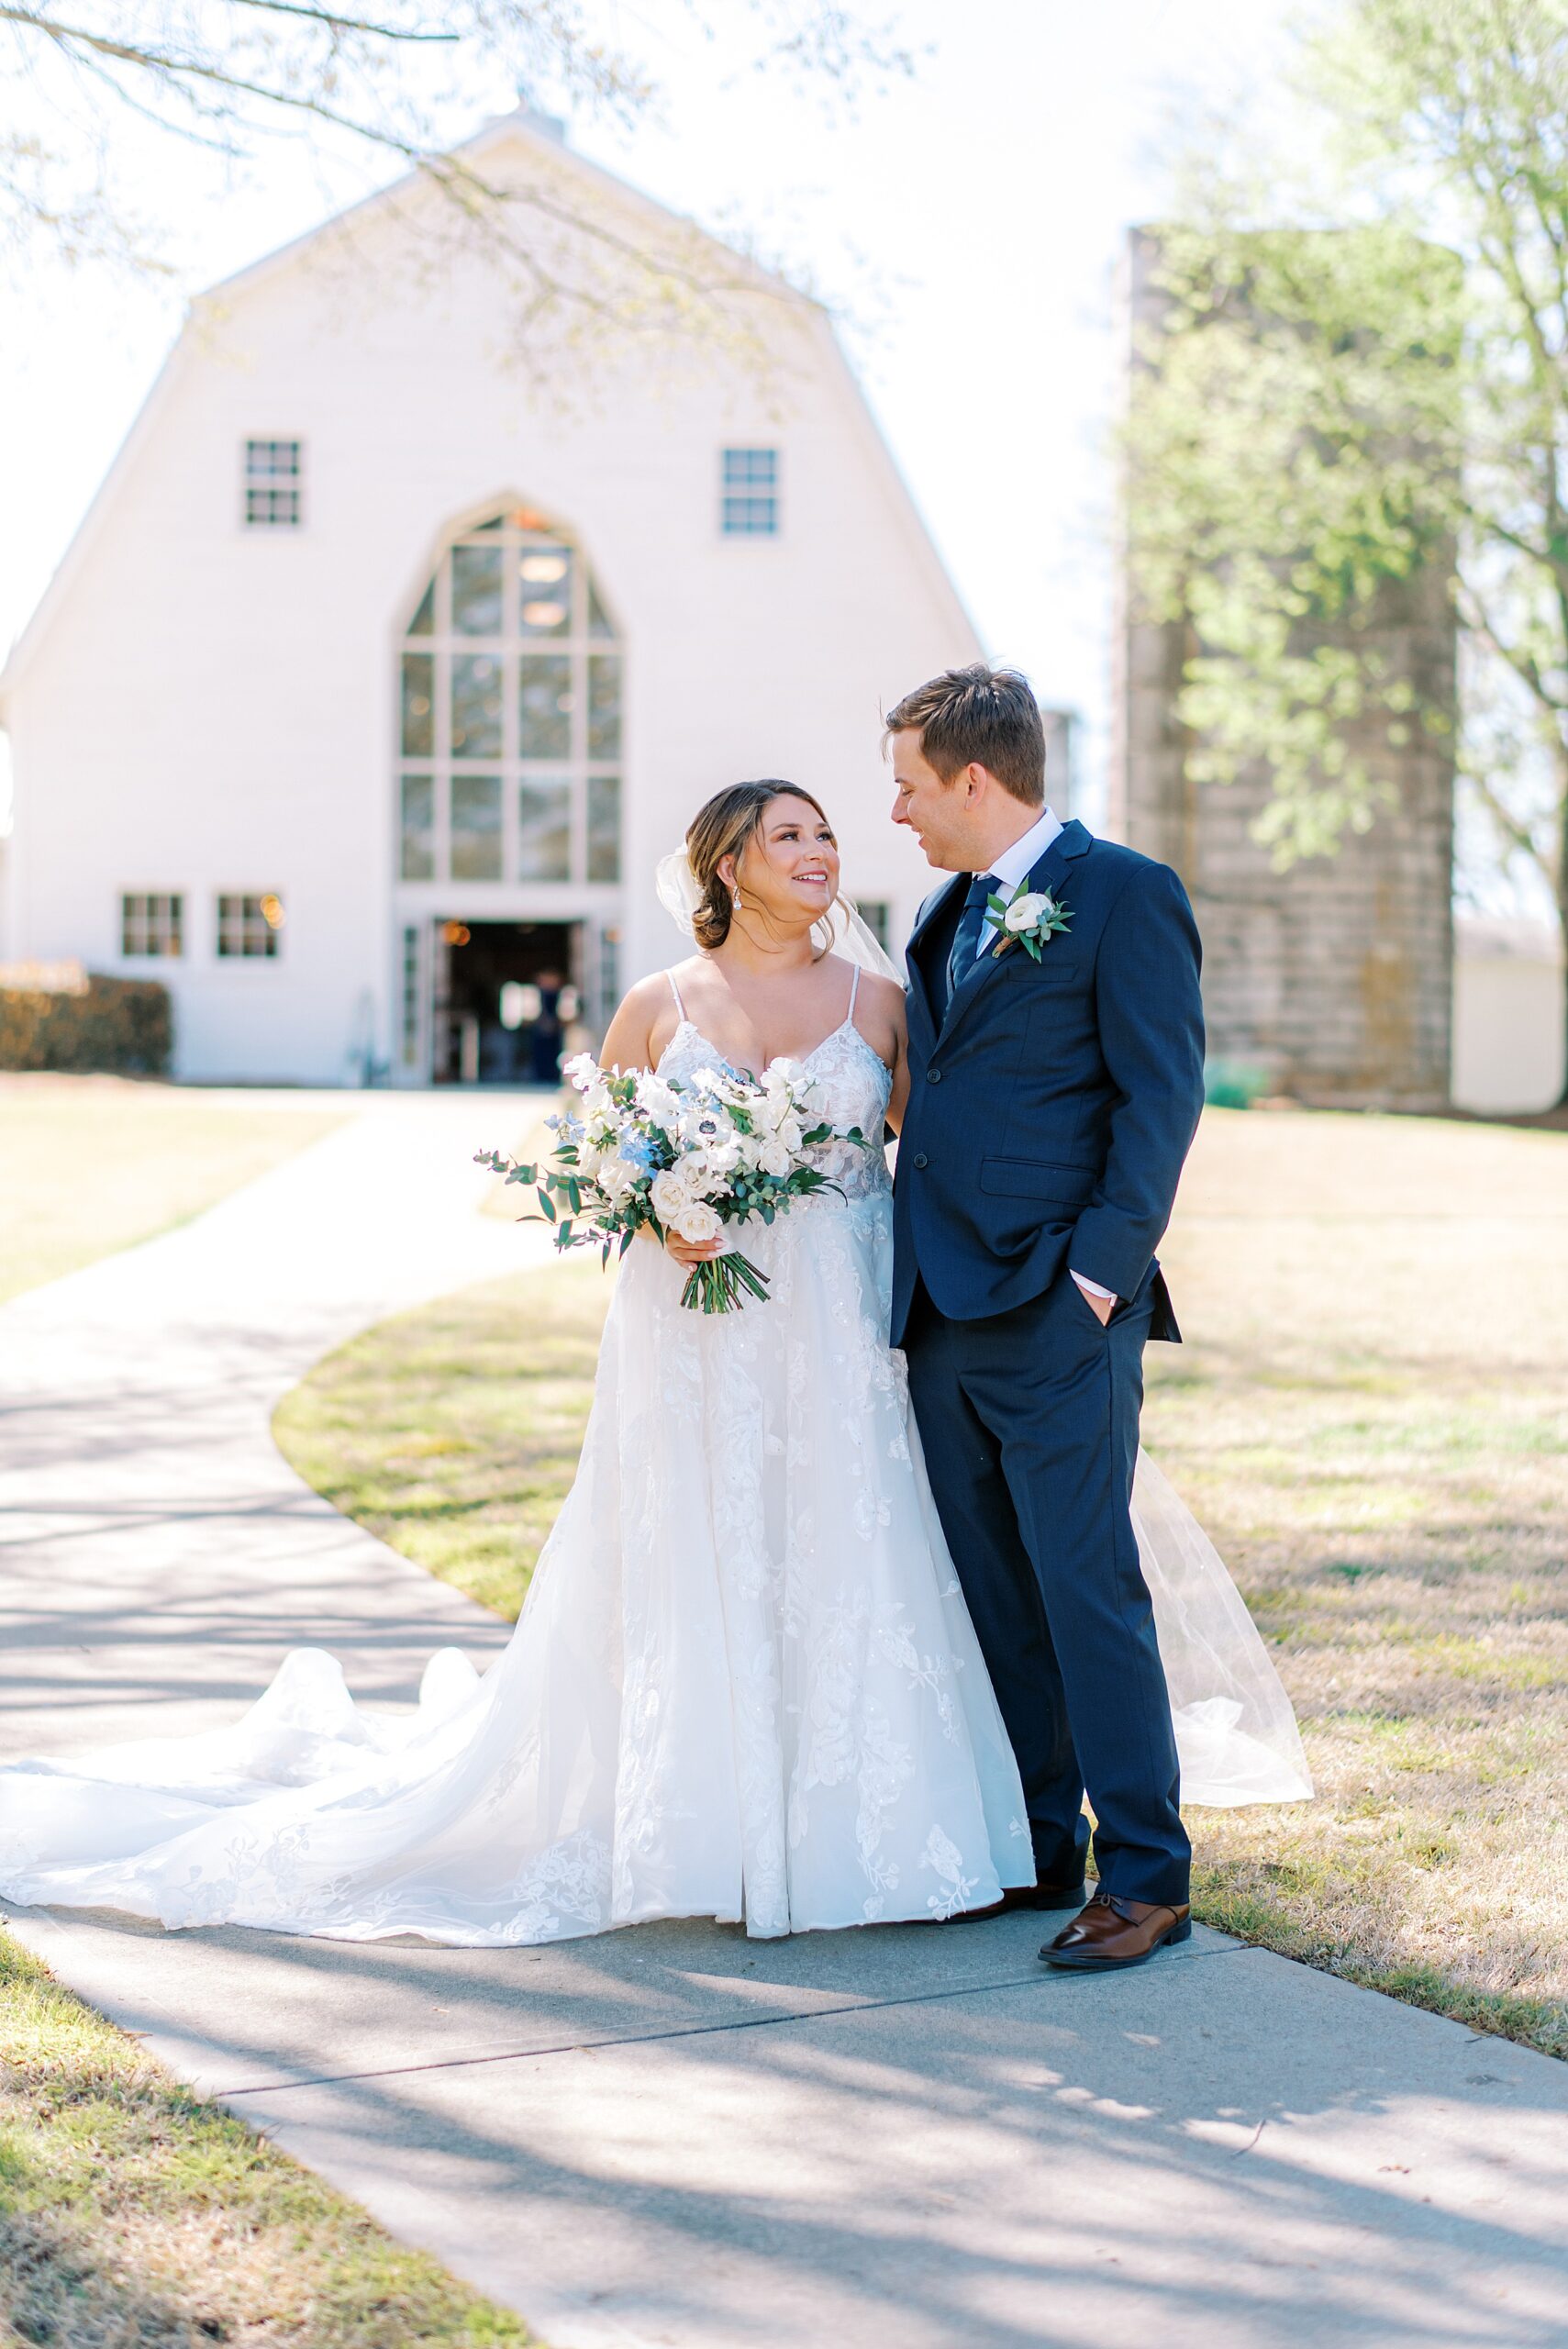 Newlyweds walk down a sidewalk together at a farm wedding venues in charlotte nc